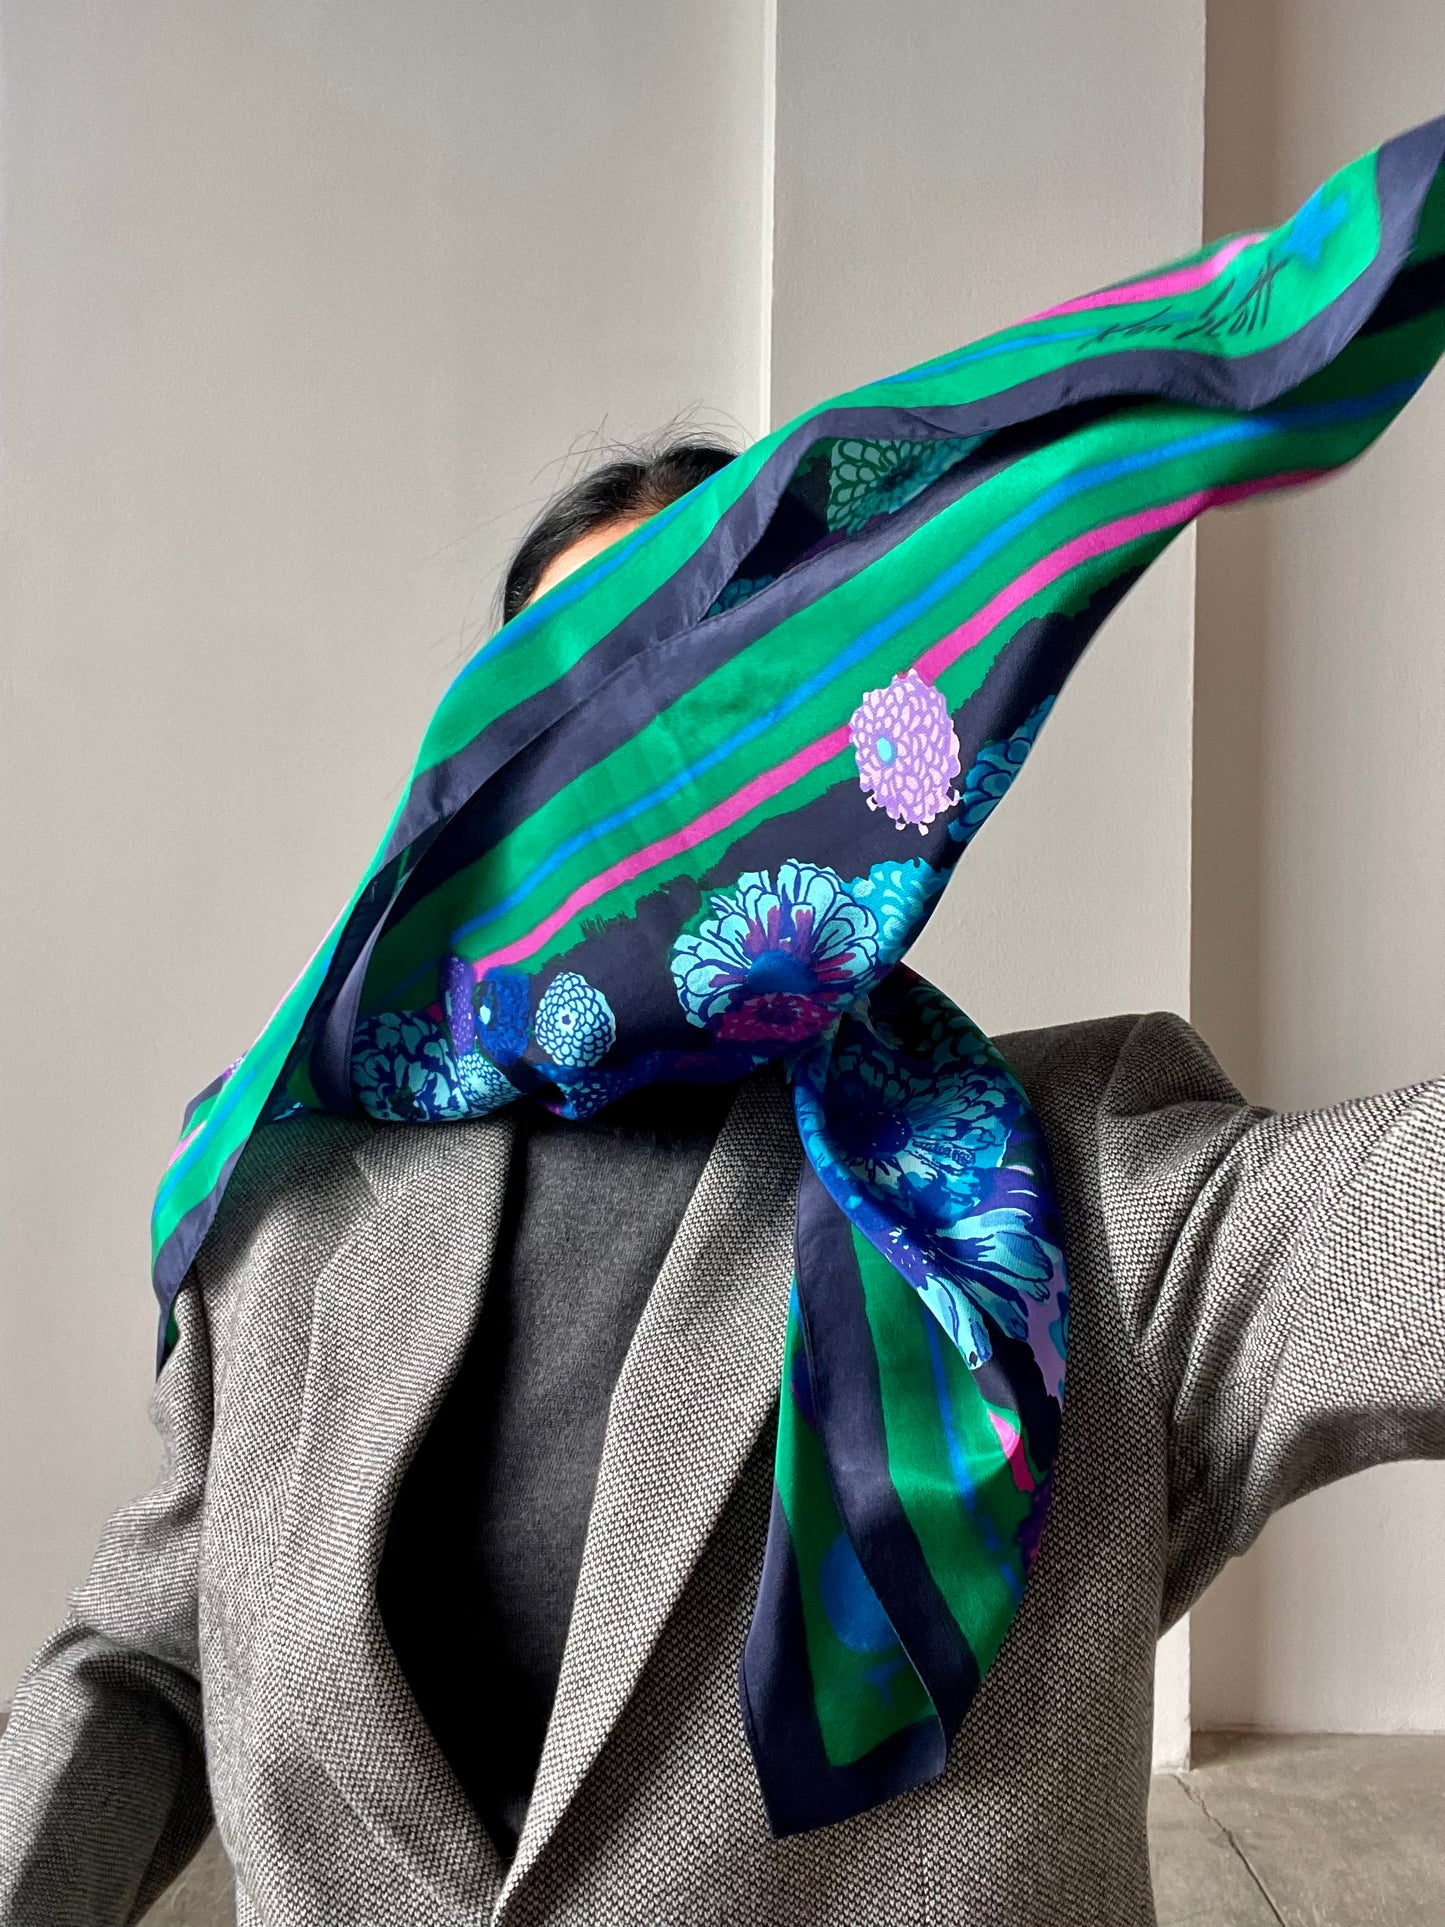 Ken Scott silk foulard